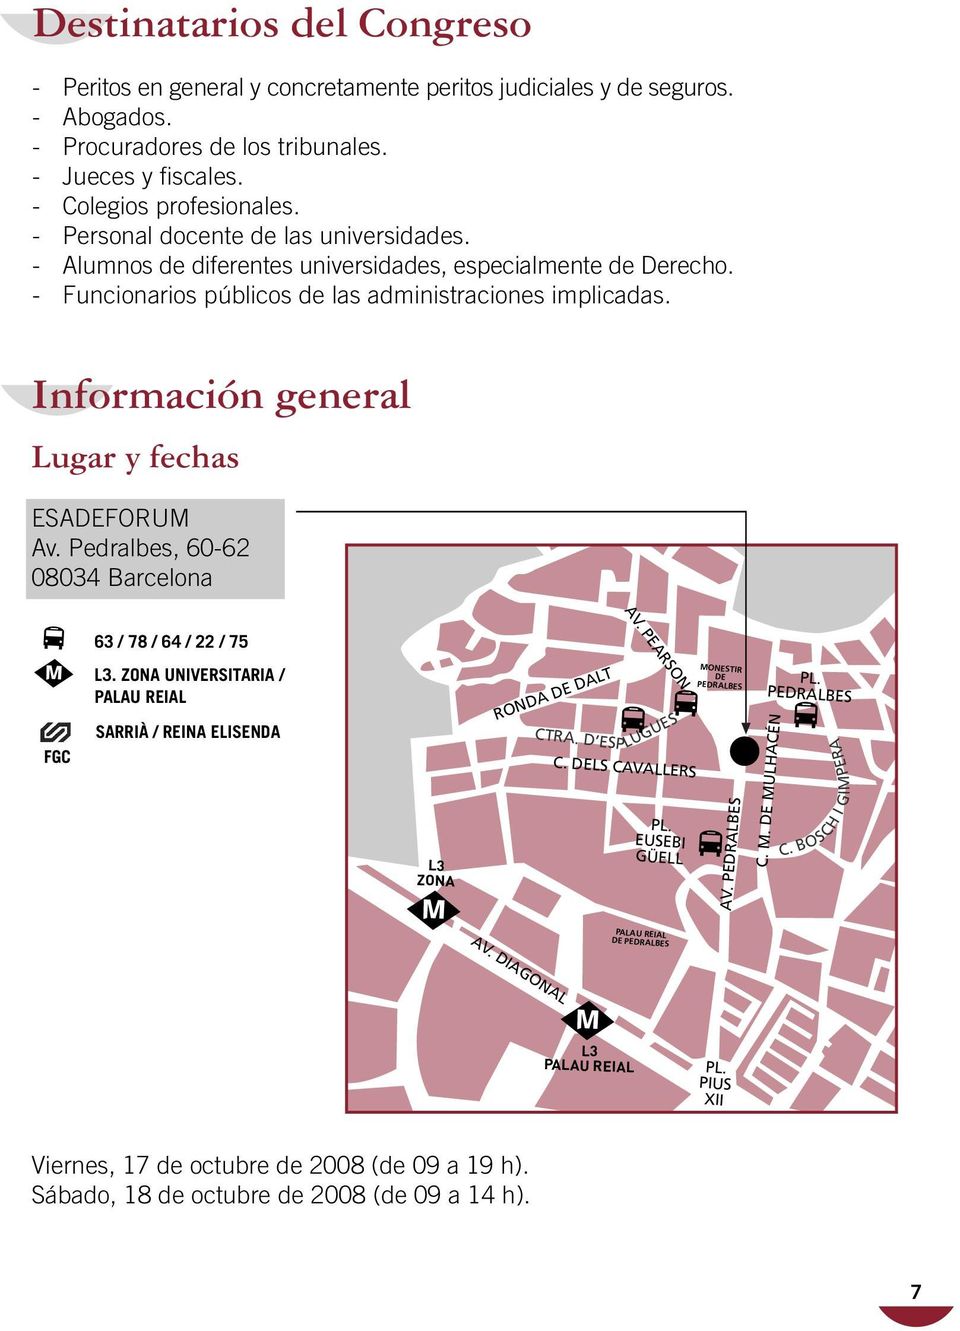 Información general Lugar y fechas ESADEFORUM Av. Pedralbes, 60-62 08034 Barcelona L3 ZONA RONDA DE DALT AV. PEARSON 63 / 78 / 64 / 22 / 75 FGC L3.